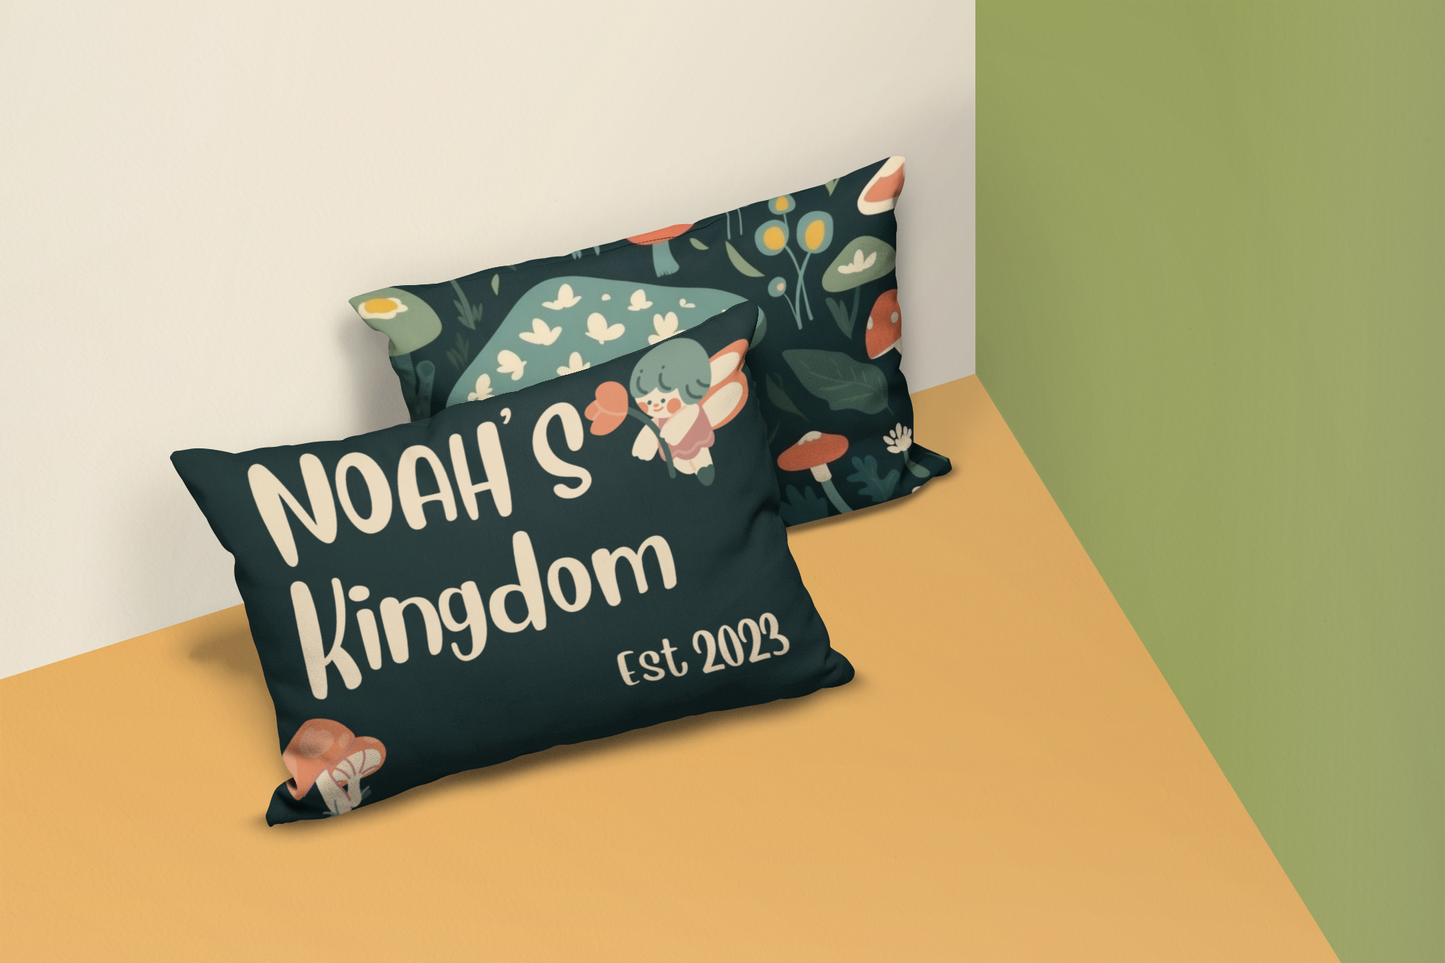 "Noah's Kingdom"  - Personalized Kids Fun-Gi Kingdom Throw Pillow